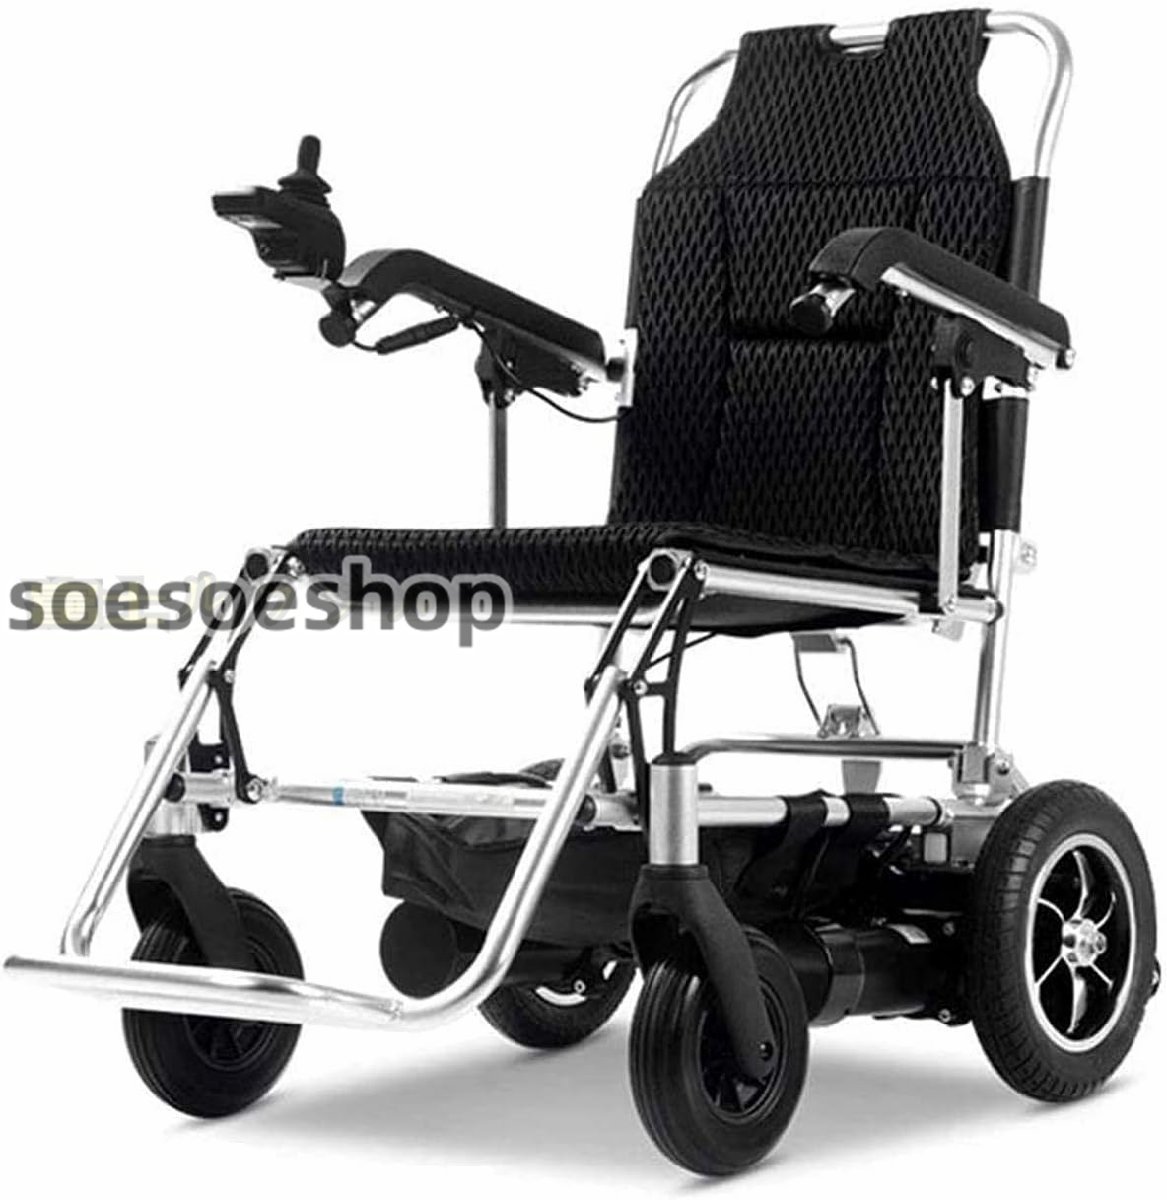 極上品★ 電動車椅子 ポータブル折りたたみ式パワーコンパクトモ 自動補助車椅子 220ポンド ヘビーデューティーをサポート 13Ahリチウム_画像1